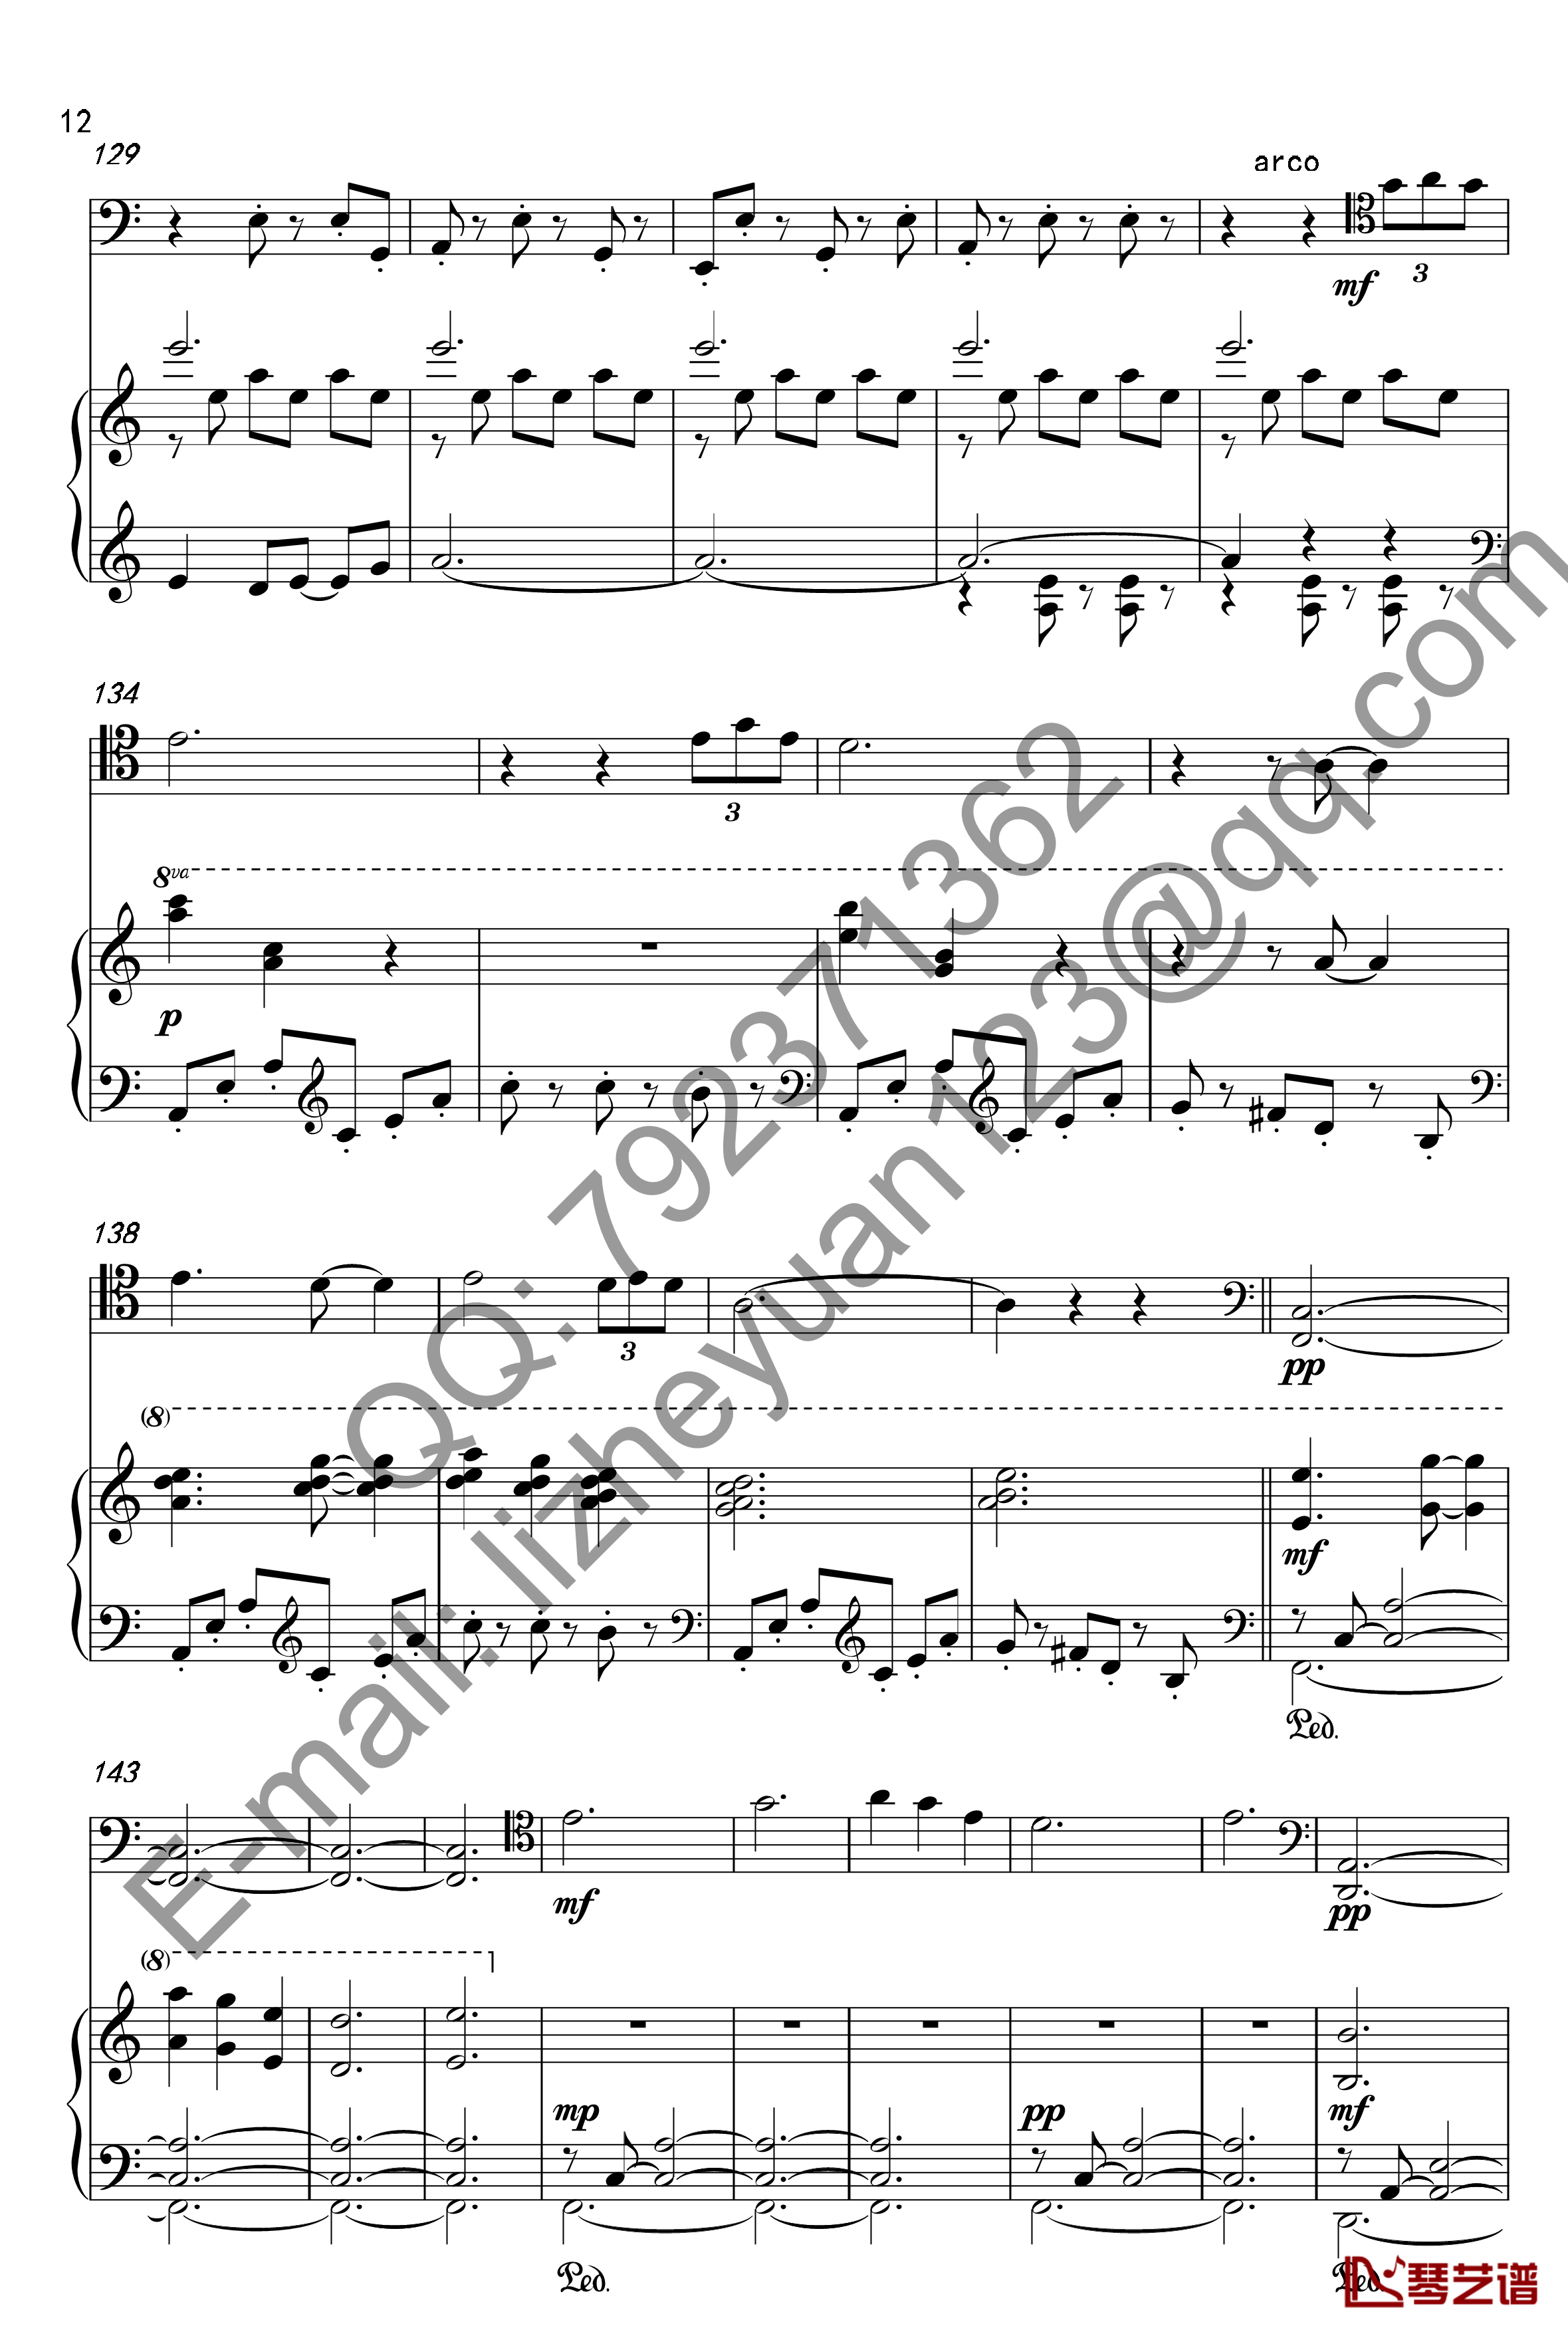 唐顿庄园主题曲钢琴谱-钢琴+大提琴-唐顿庄园